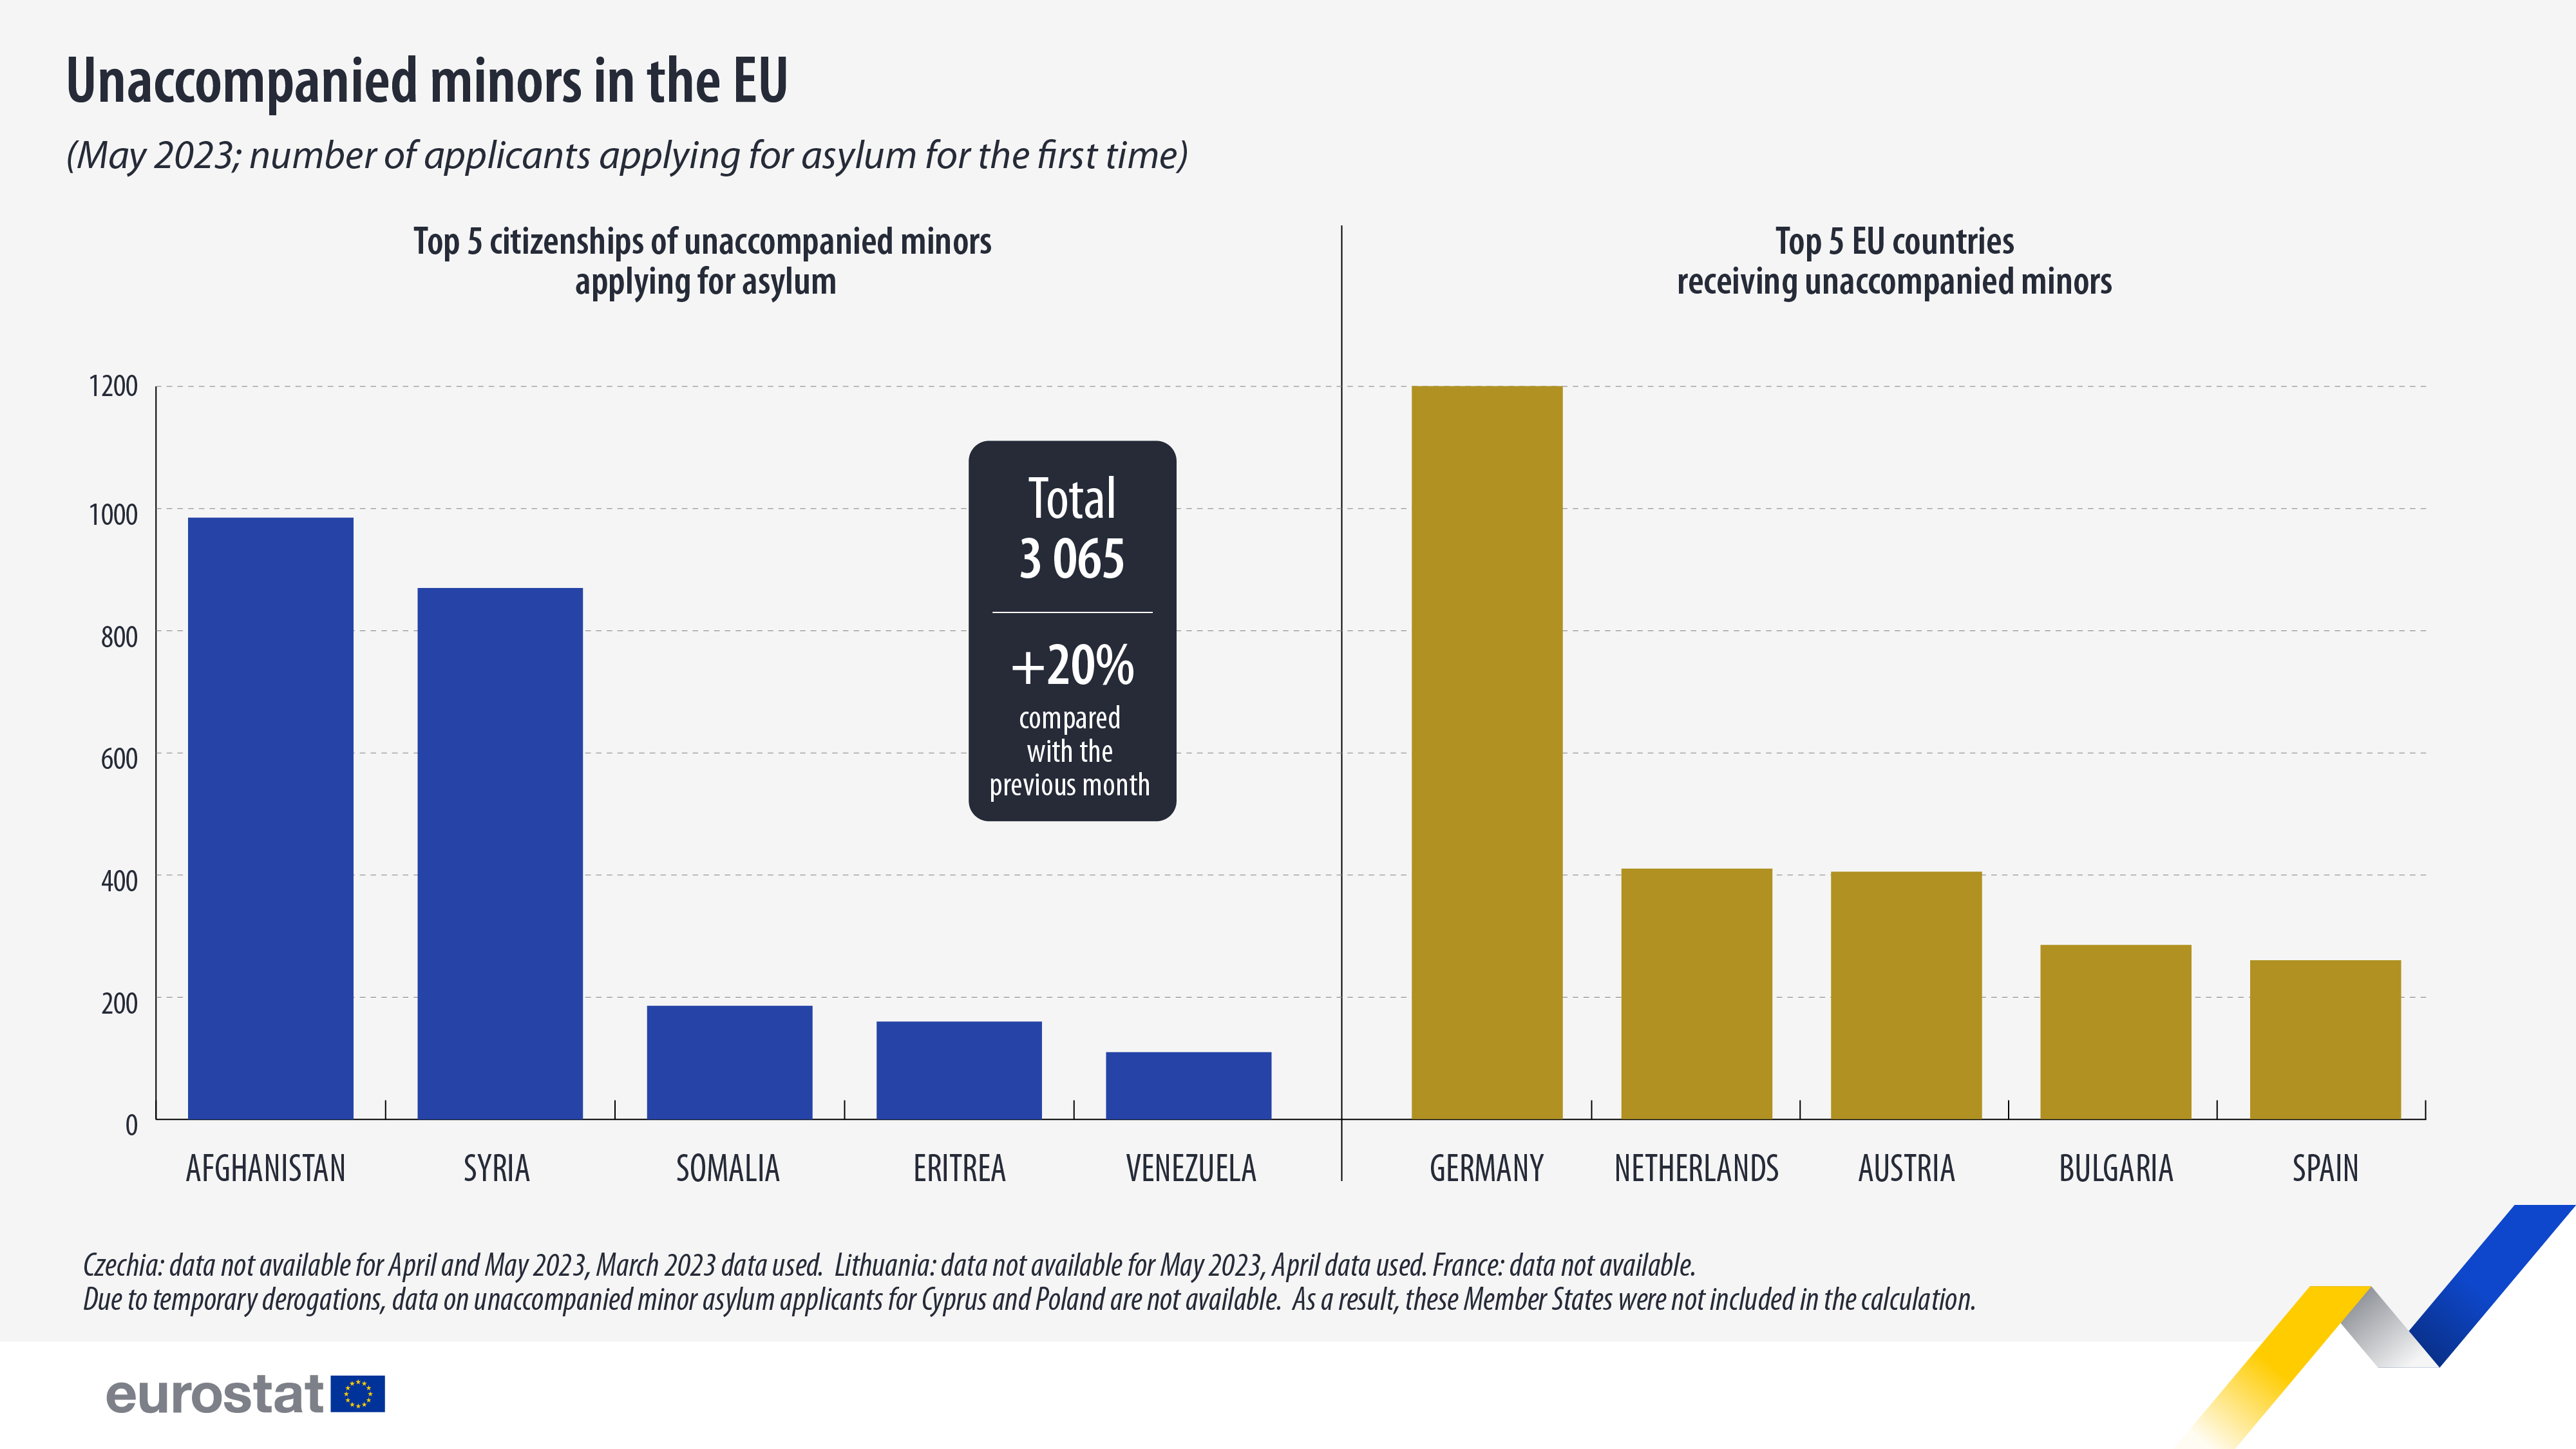 ραβδόγραμμα: Ασυνόδευτοι ανήλικοι στην ΕΕ (Μάιος 2023, αριθμός αιτούντων άσυλο για πρώτη φορά, 5 κορυφαίες υπηκοότητες που υποβάλλουν αίτηση και κορυφαίες 5 χώρες της ΕΕ που δέχονται ασυνόδευτους ανηλίκους)